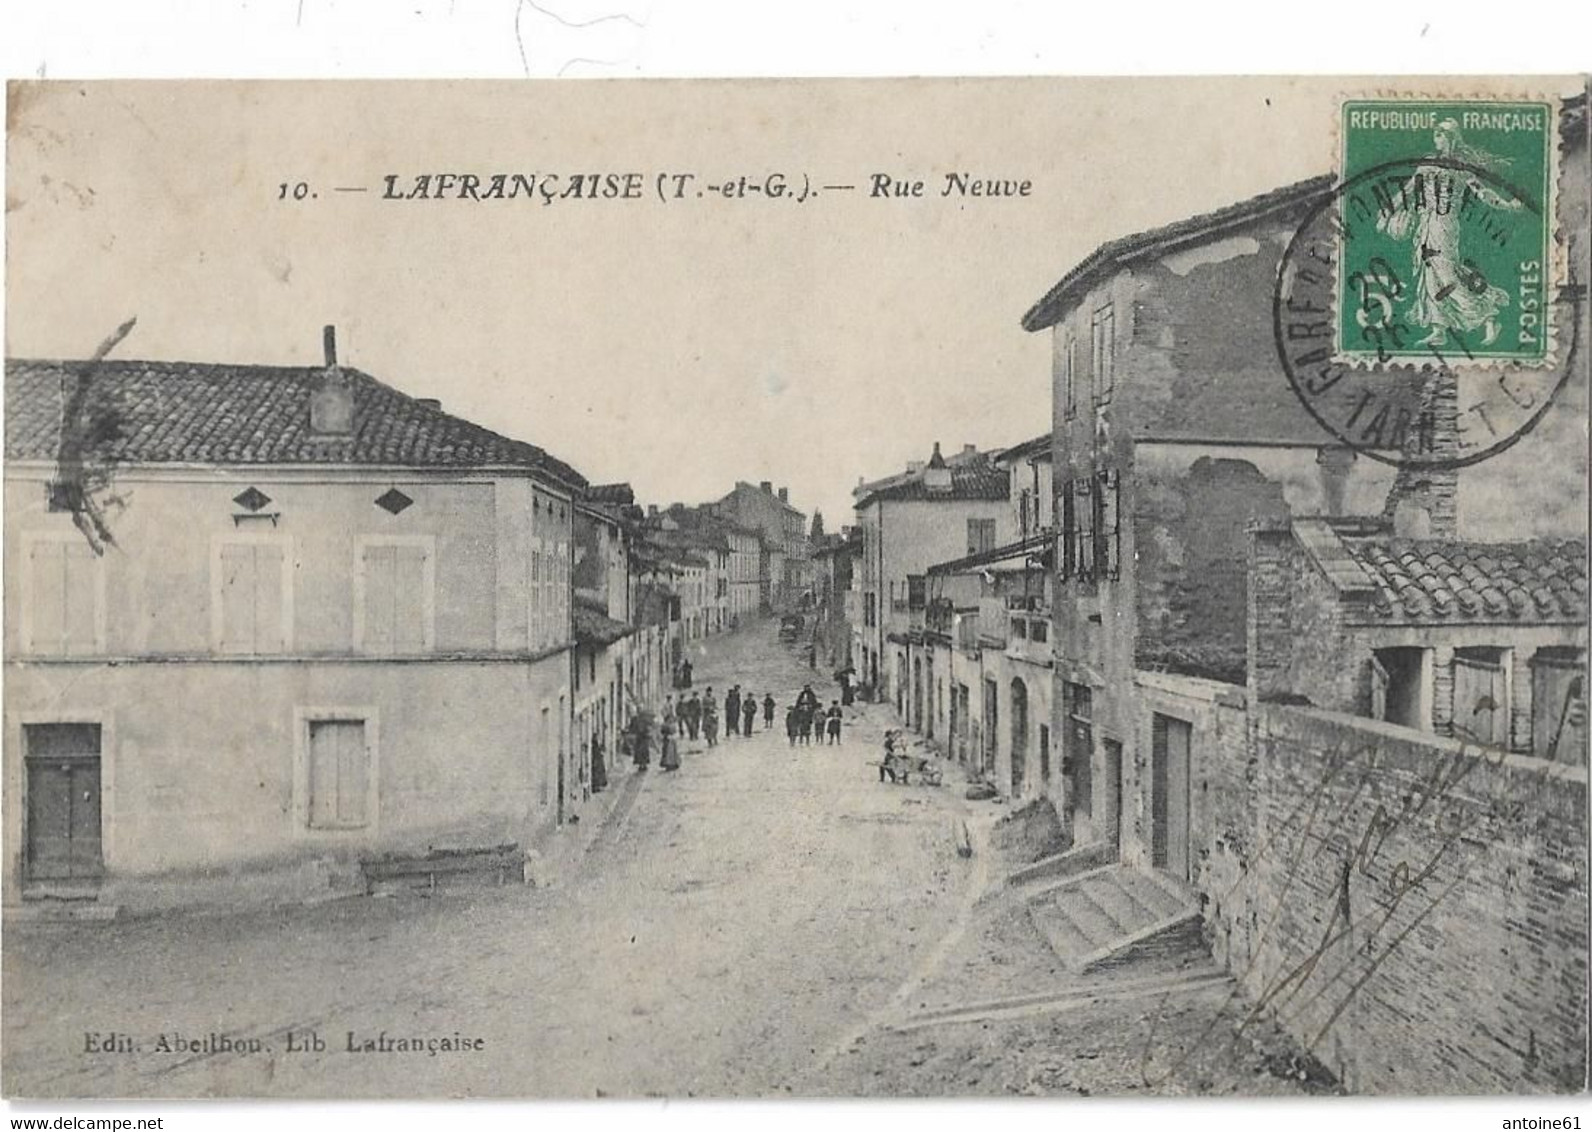 LAFRANCAISE - Rue Neuve - Lafrancaise